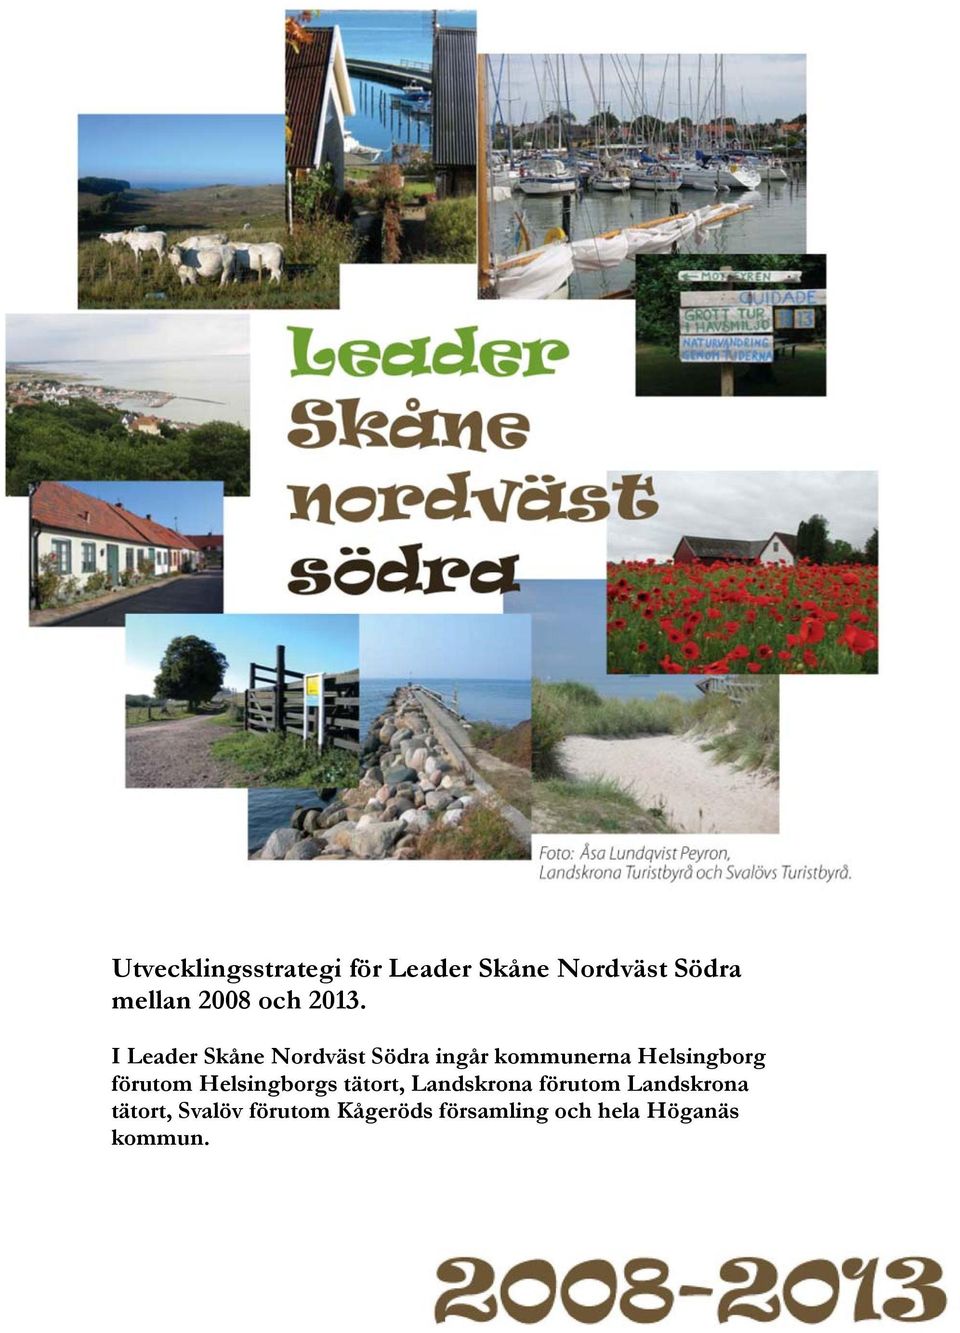 I Leader Skåne Nordväst Södra ingår kommunerna Helsingborg